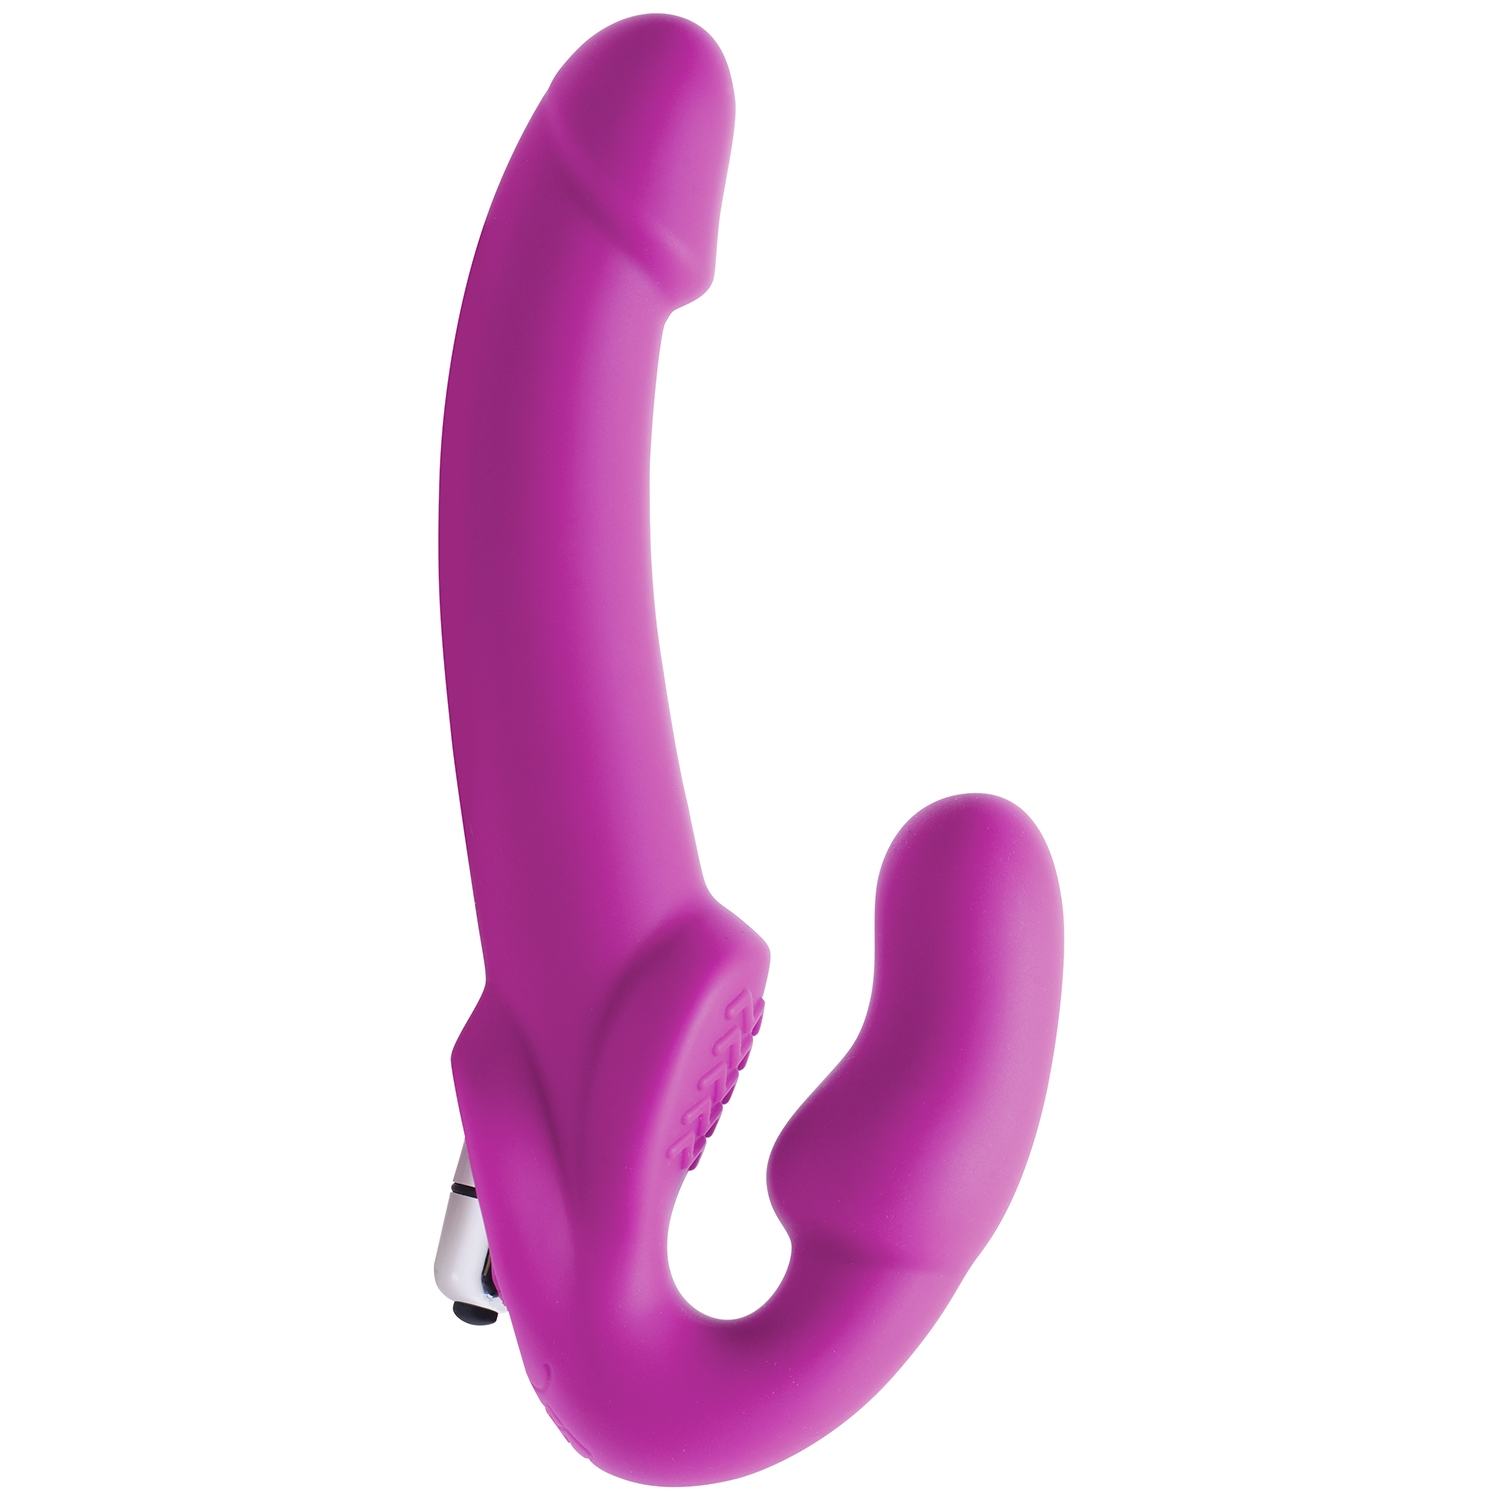 6: Strap U Evoke Strap-on Dildo med Vibrator     - Purple